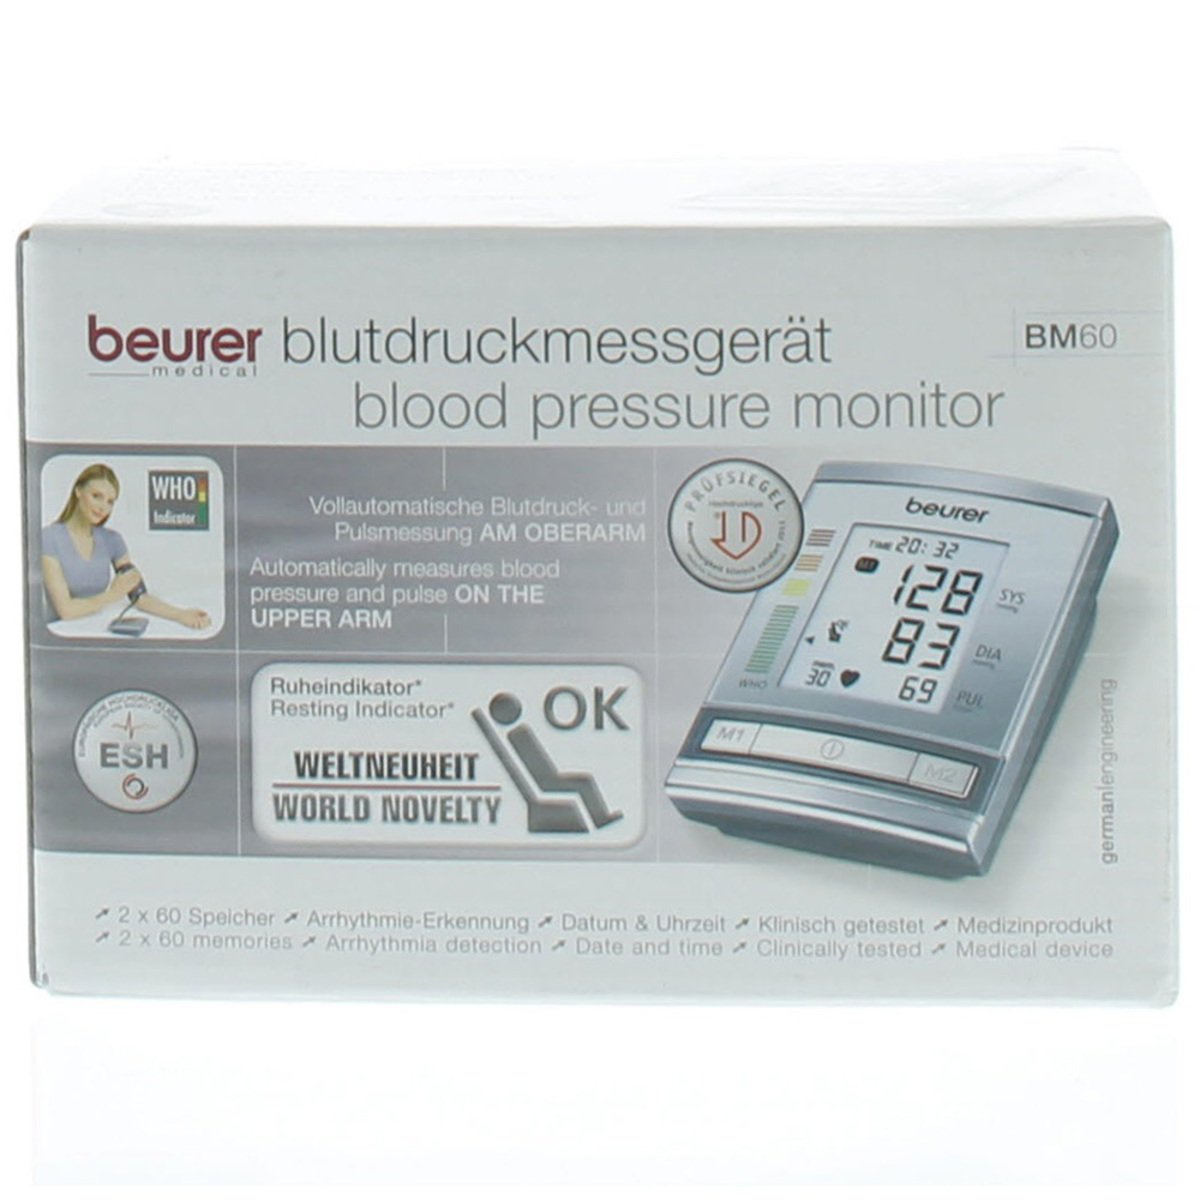 بيورير جهاز قياس ضغط الدم BC60